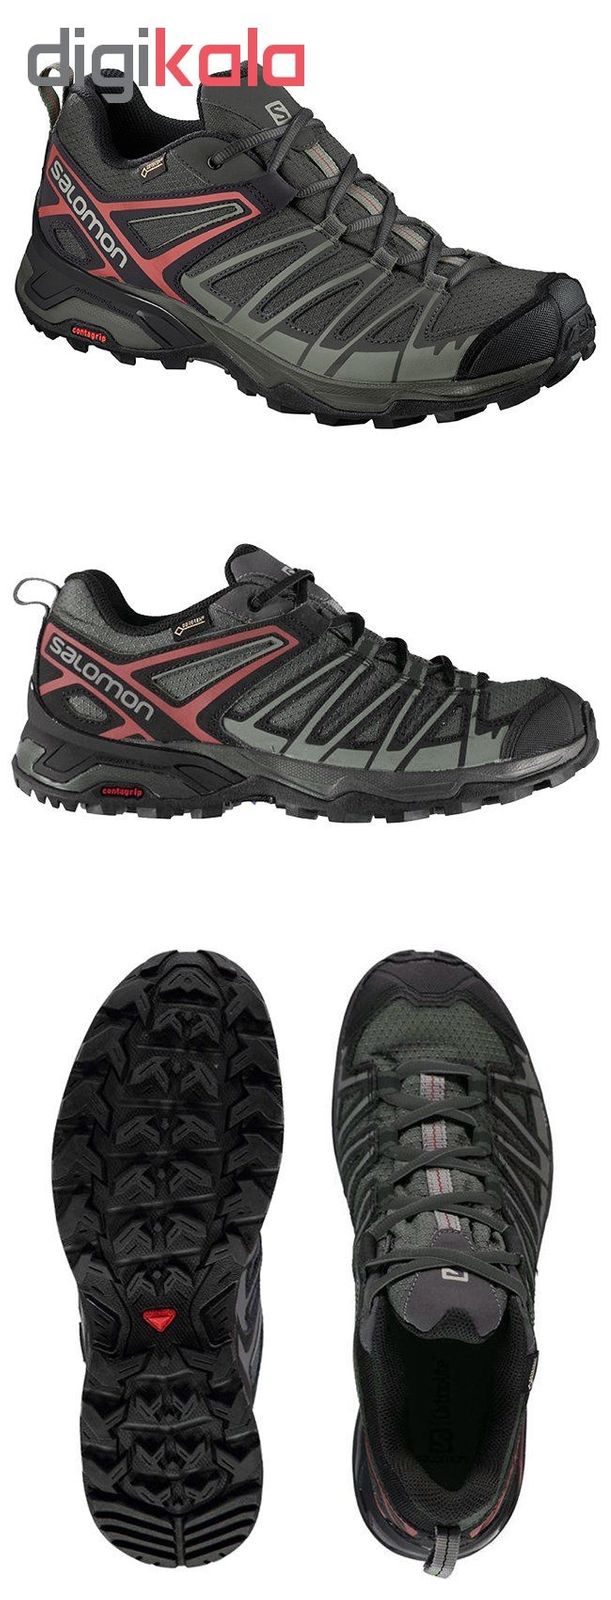 کفش مخصوص پیاده روی مردانه سالومون مدل 407414 NEW2019MIRACLE